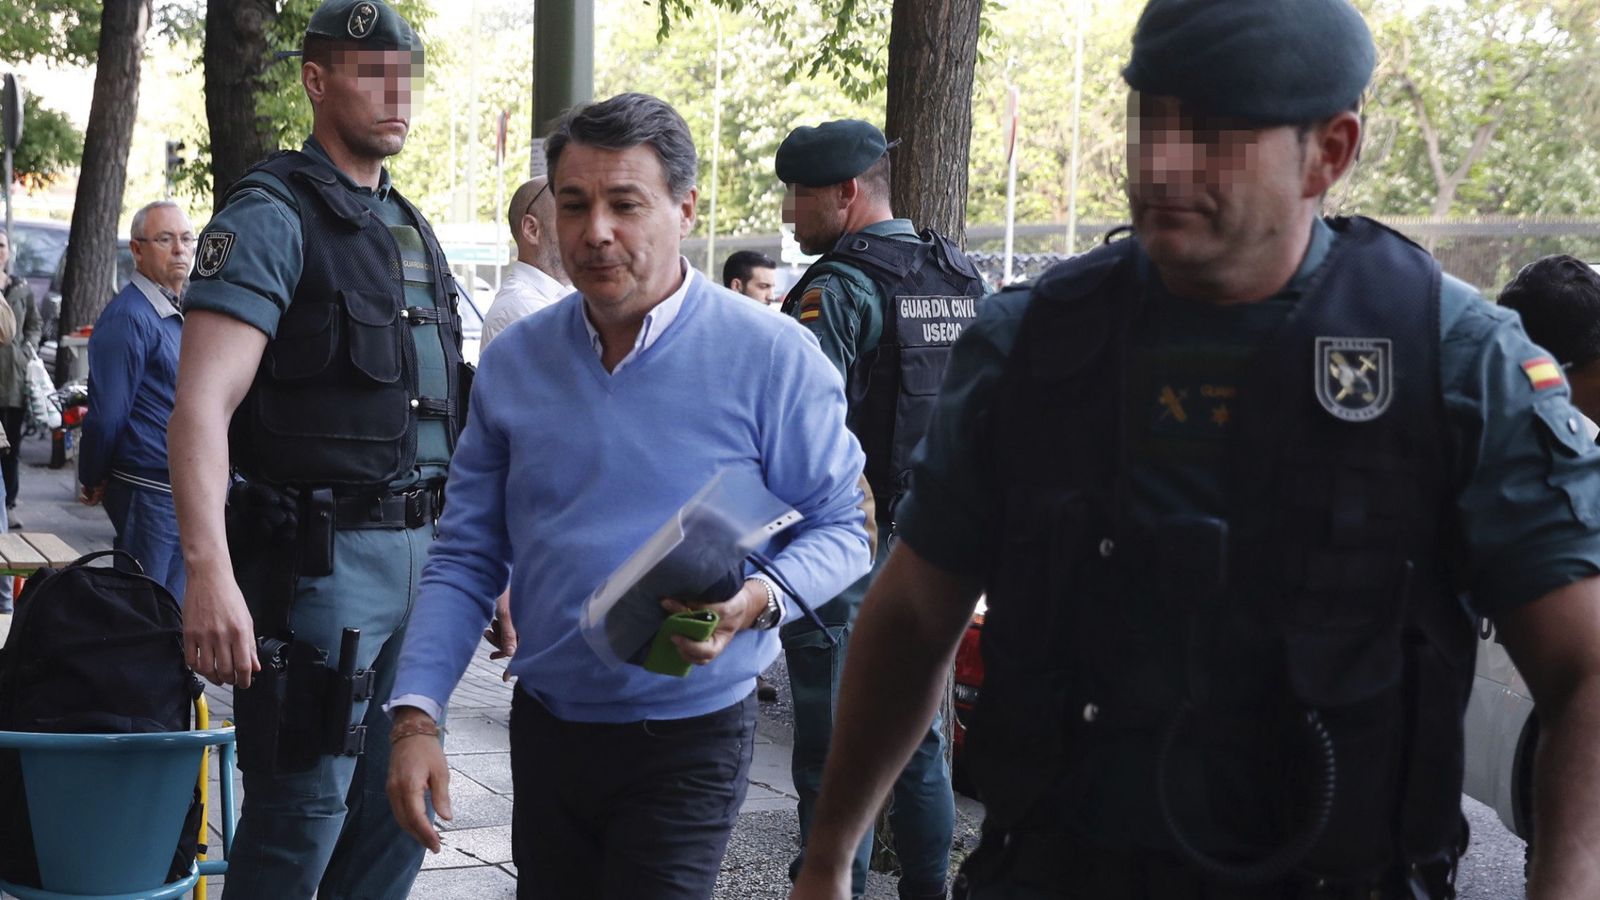 Foto: El expresidente de la Comunidad de Madrid Ignacio González (c) llega a su despacho acompañado por guardias civiles para proceder al registro del mismo. (EFE)